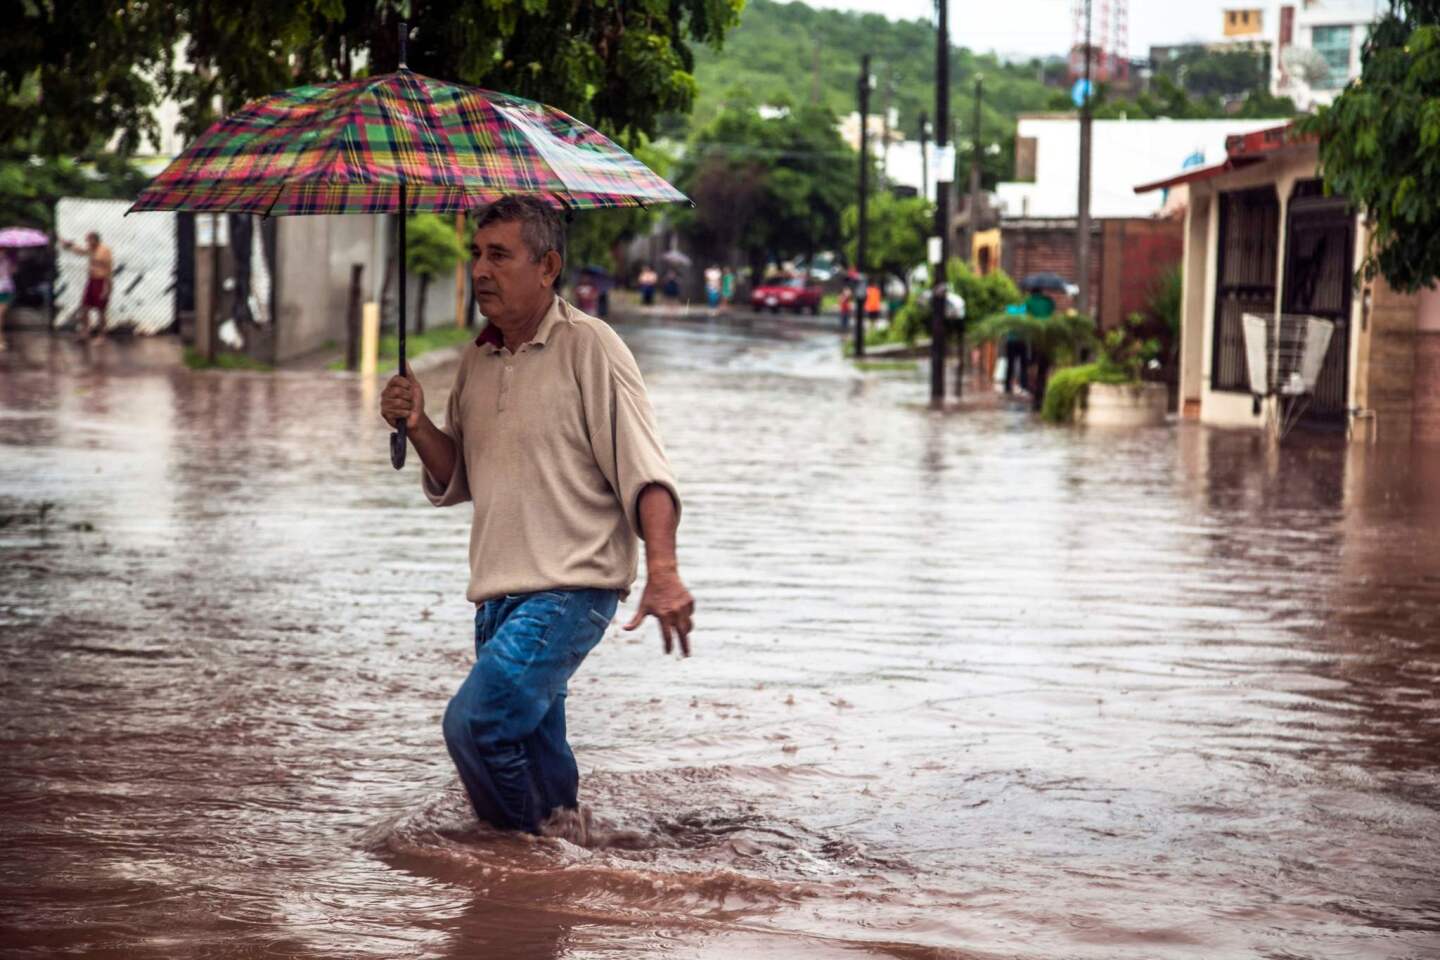 Un hombre vadea en una calle inundada en Culiacán, Sinaloa, México el 20 de septiembre de 2018. - Fuertes lluvias han inundado diferentes vecindarios de Culiacán en las últimas horas.